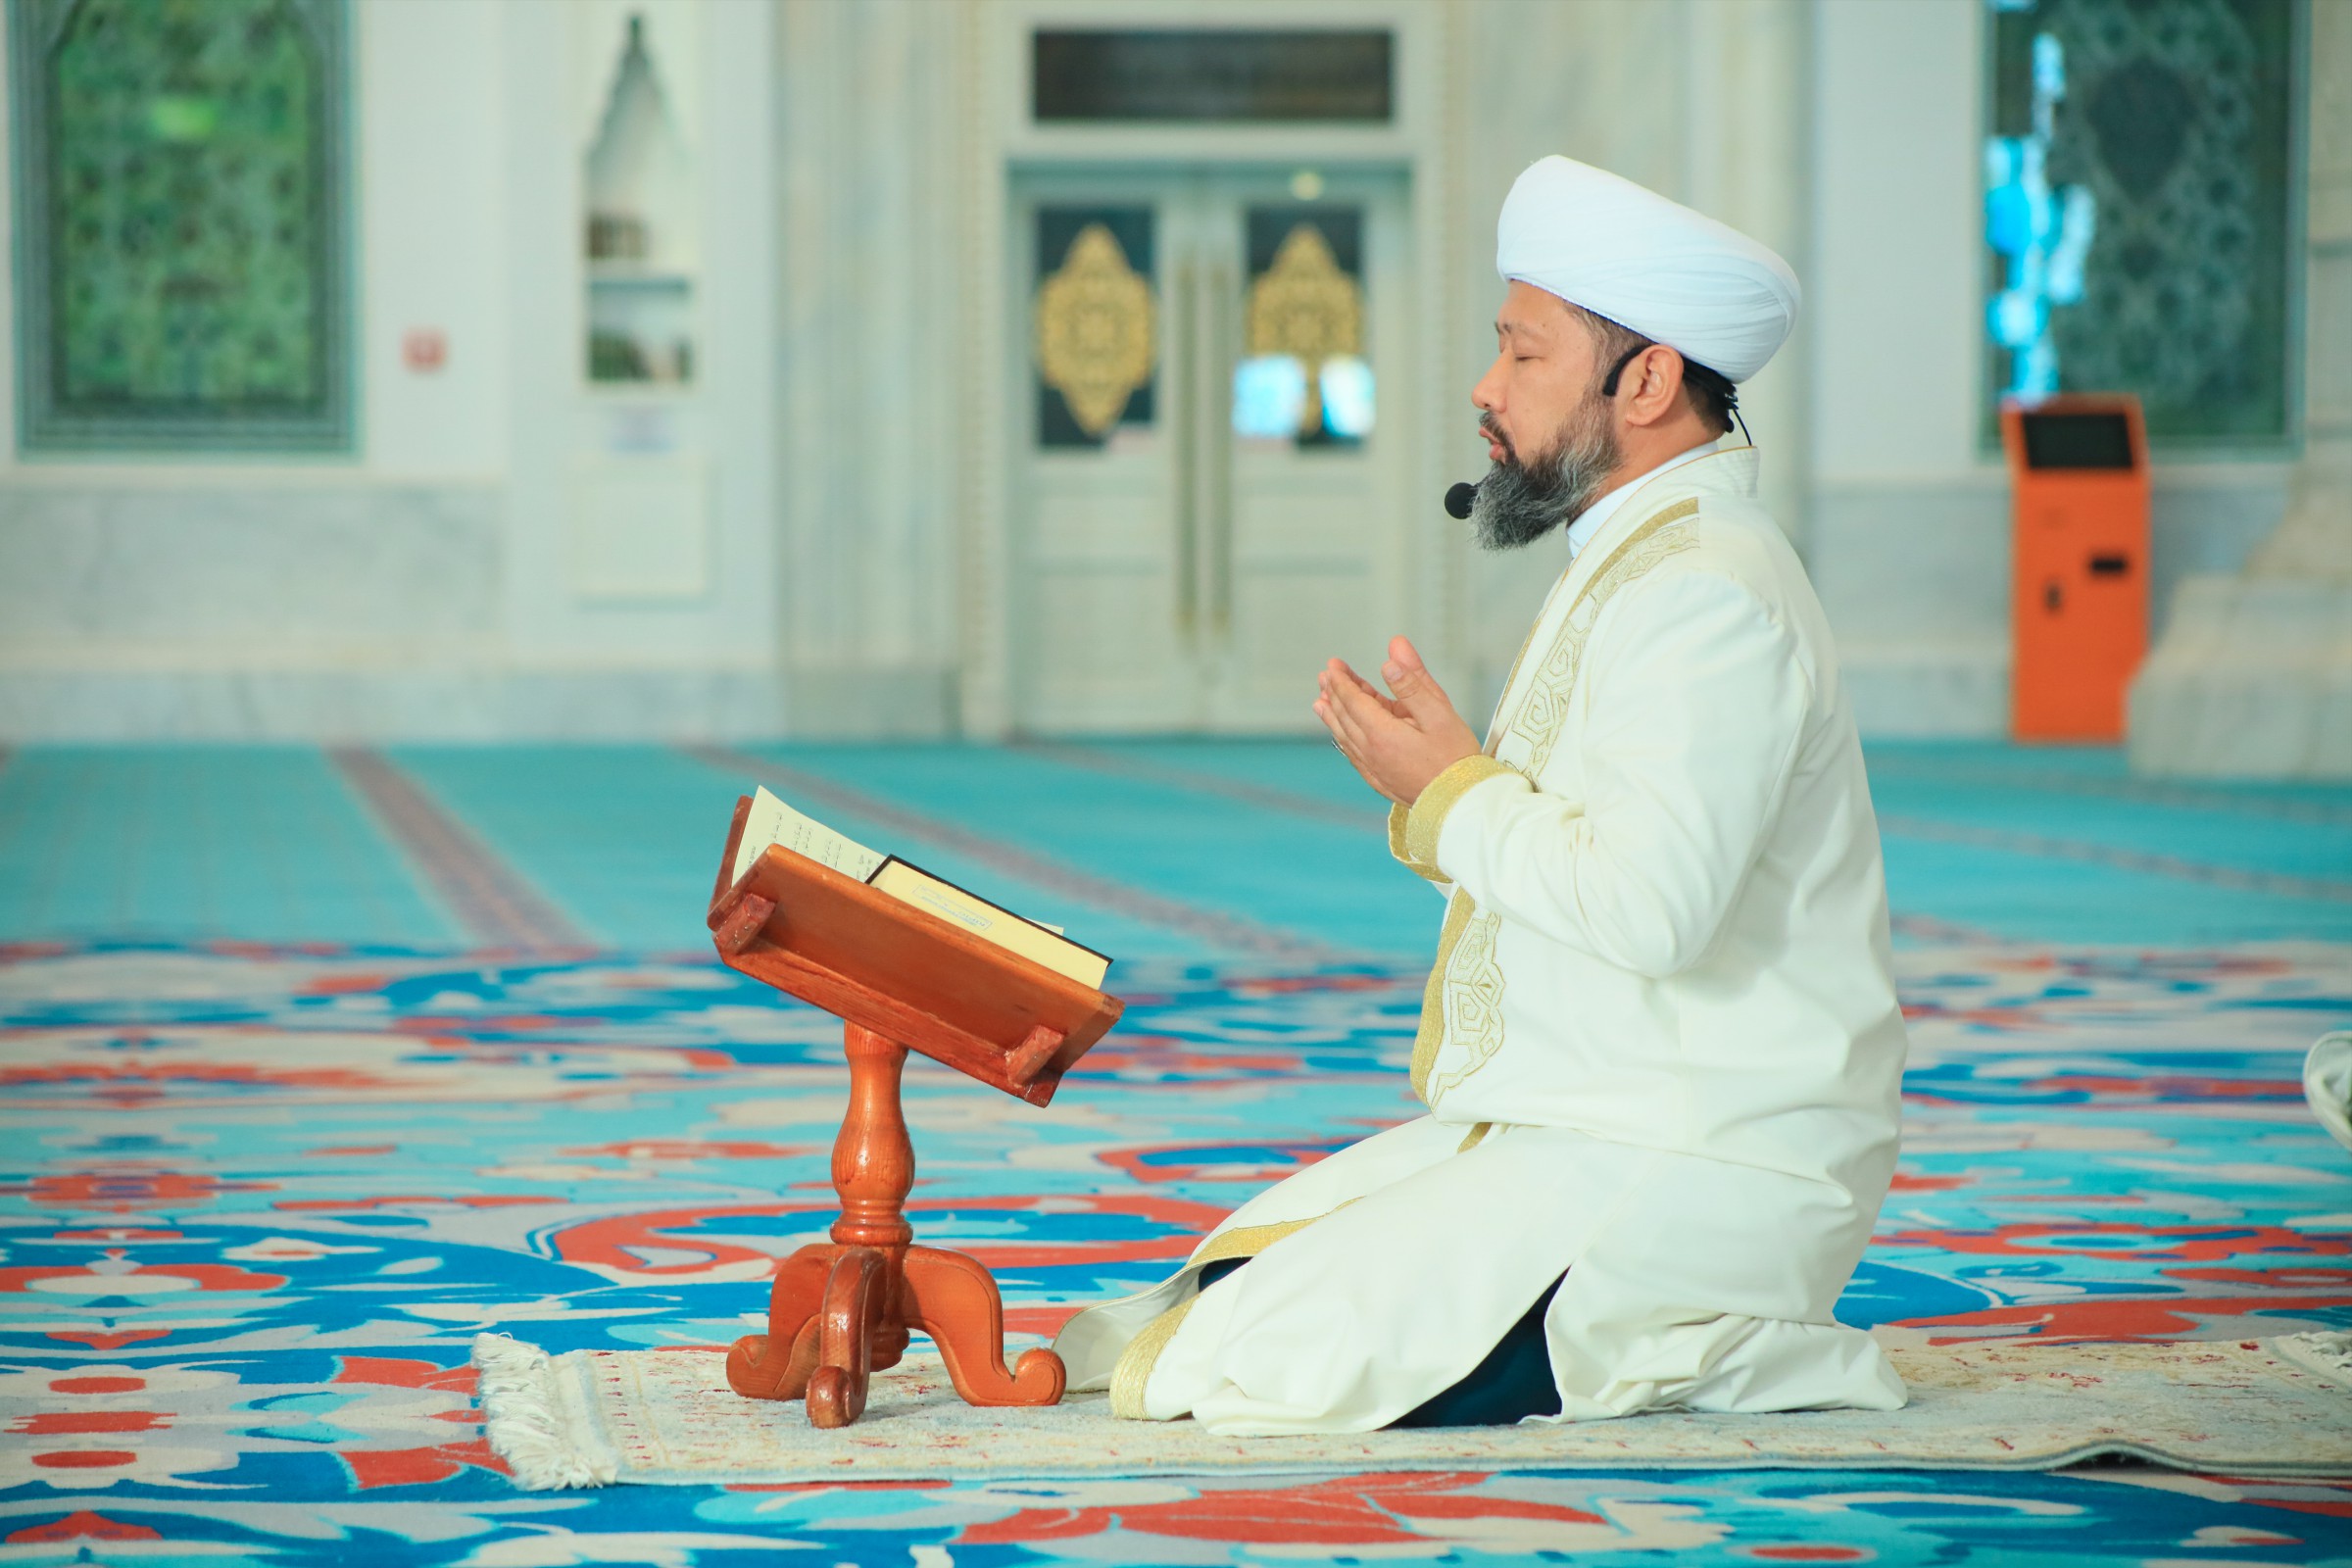 Құран хатым. Коран хатым. Муфтий Таджикистана чтение Корана. Хатым Құран деген не. Руза дугасы.